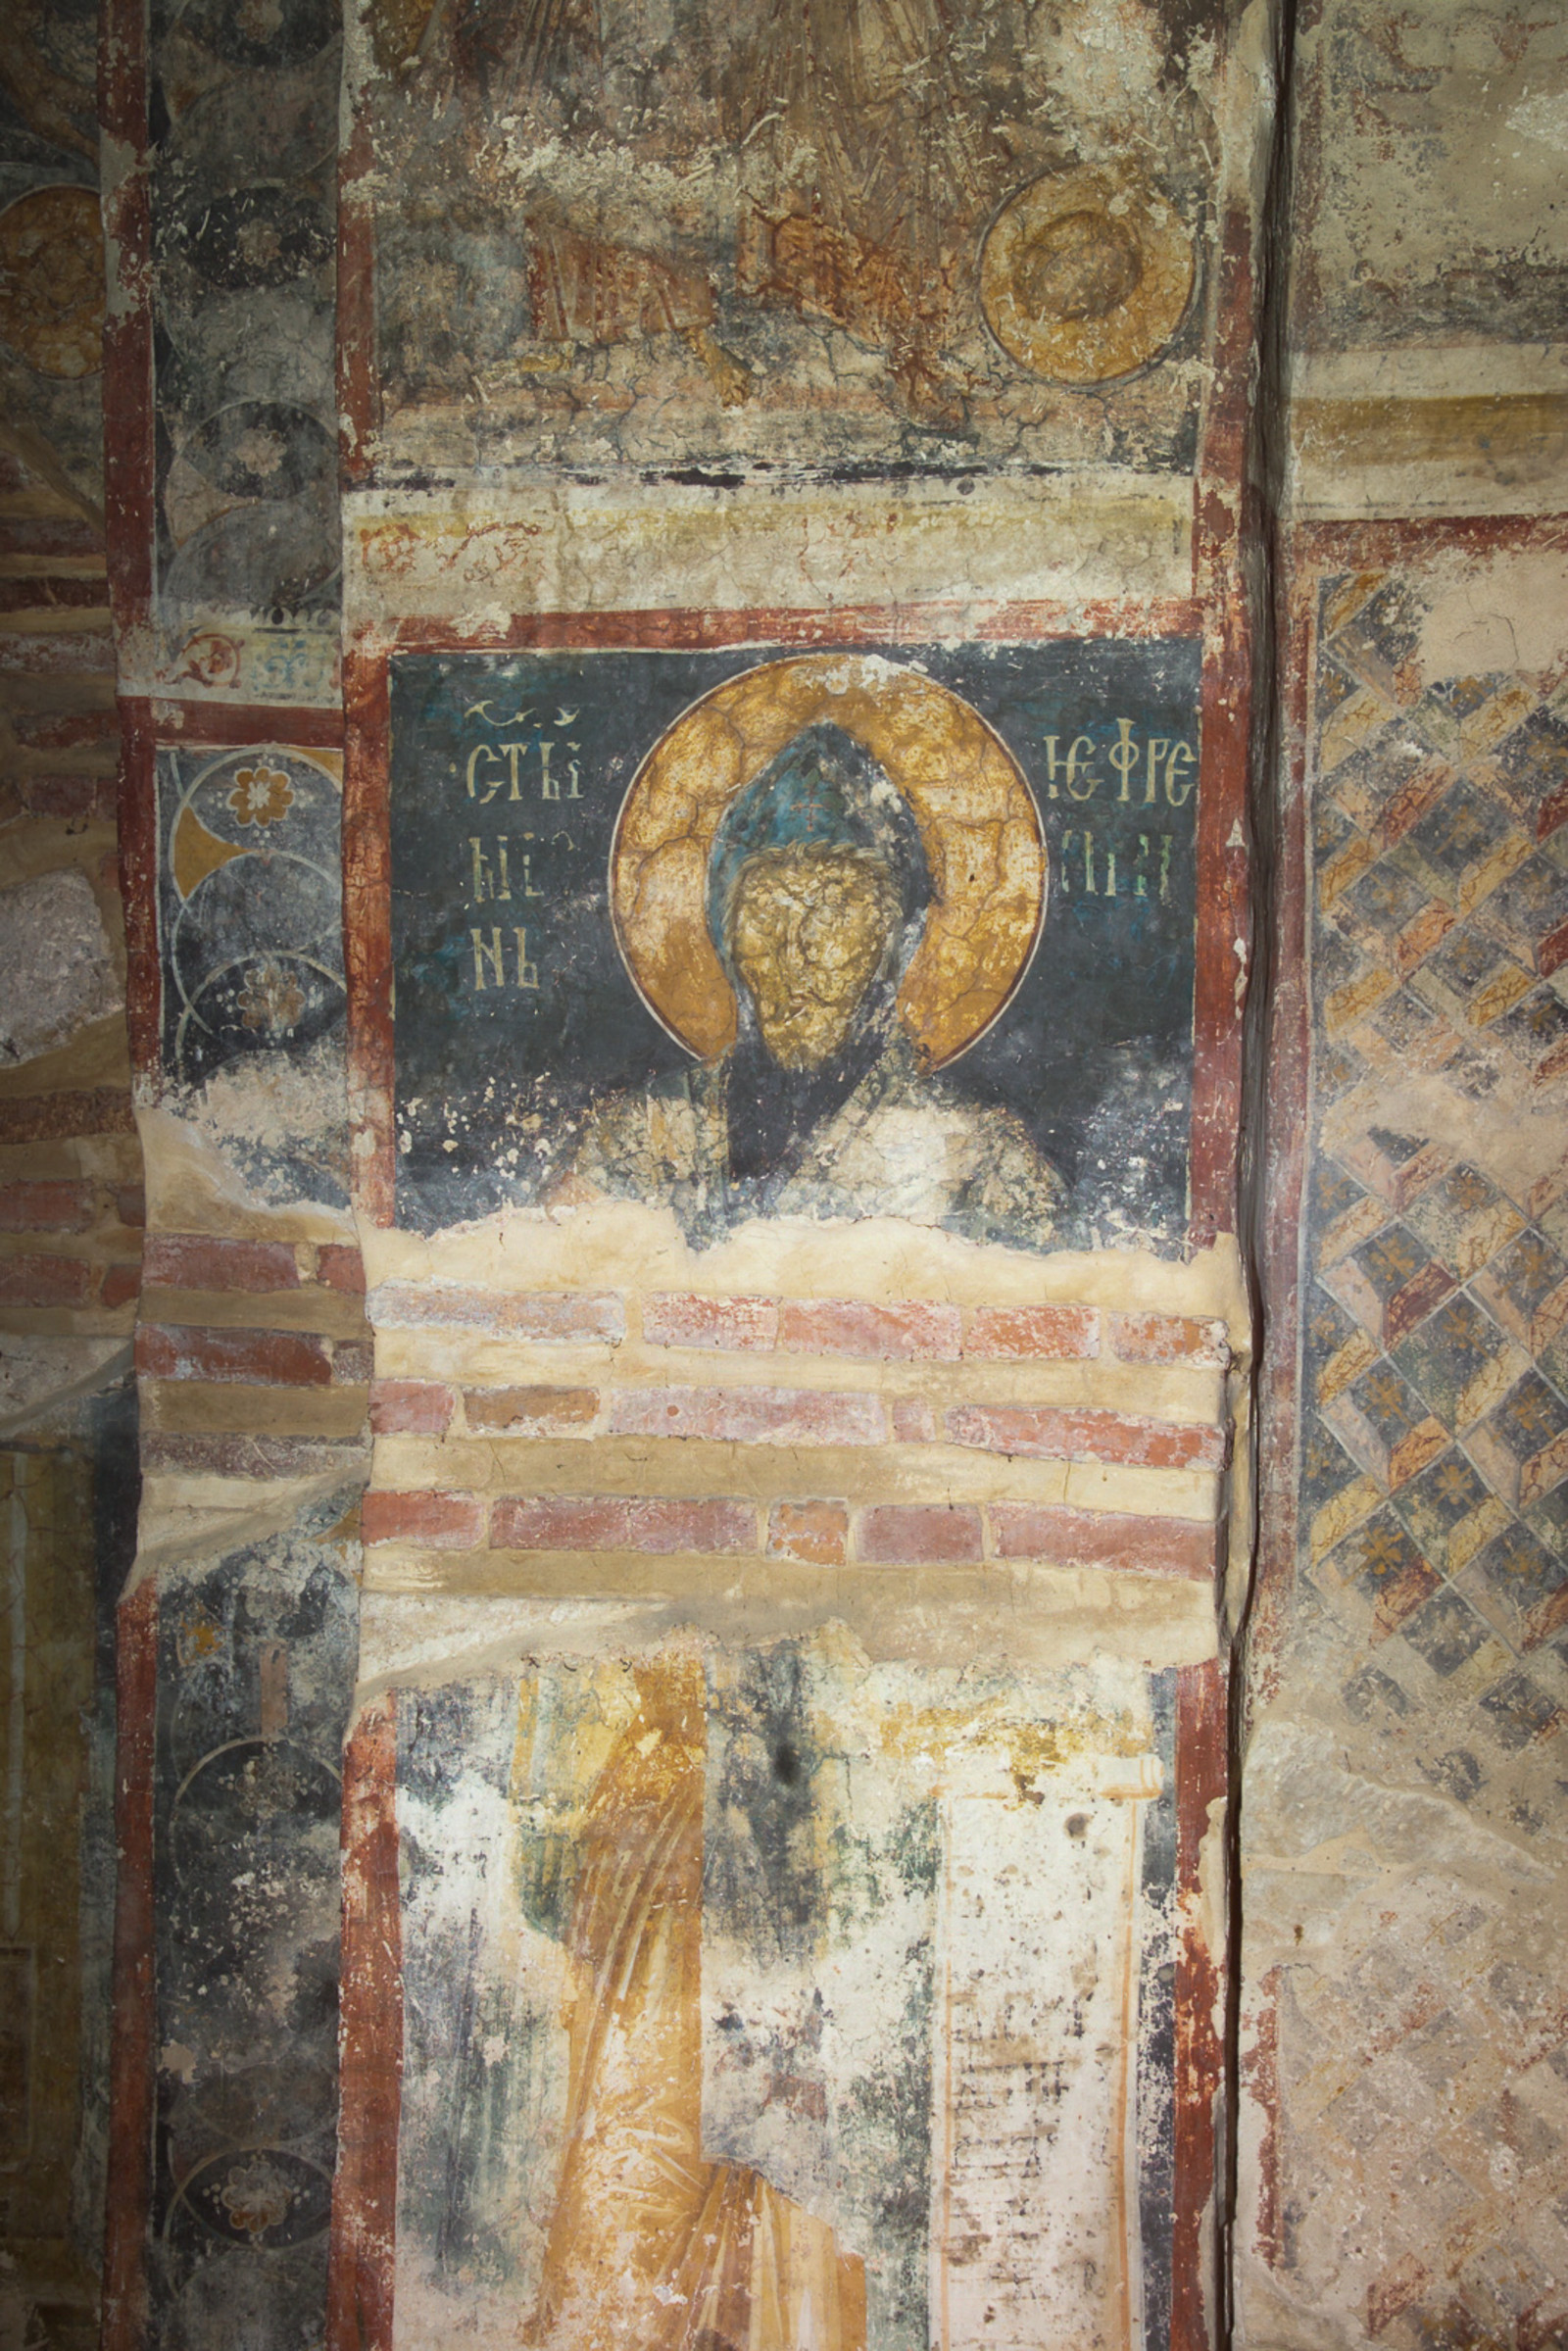 43 St. Ephrem, holding an open written scroll, damaged